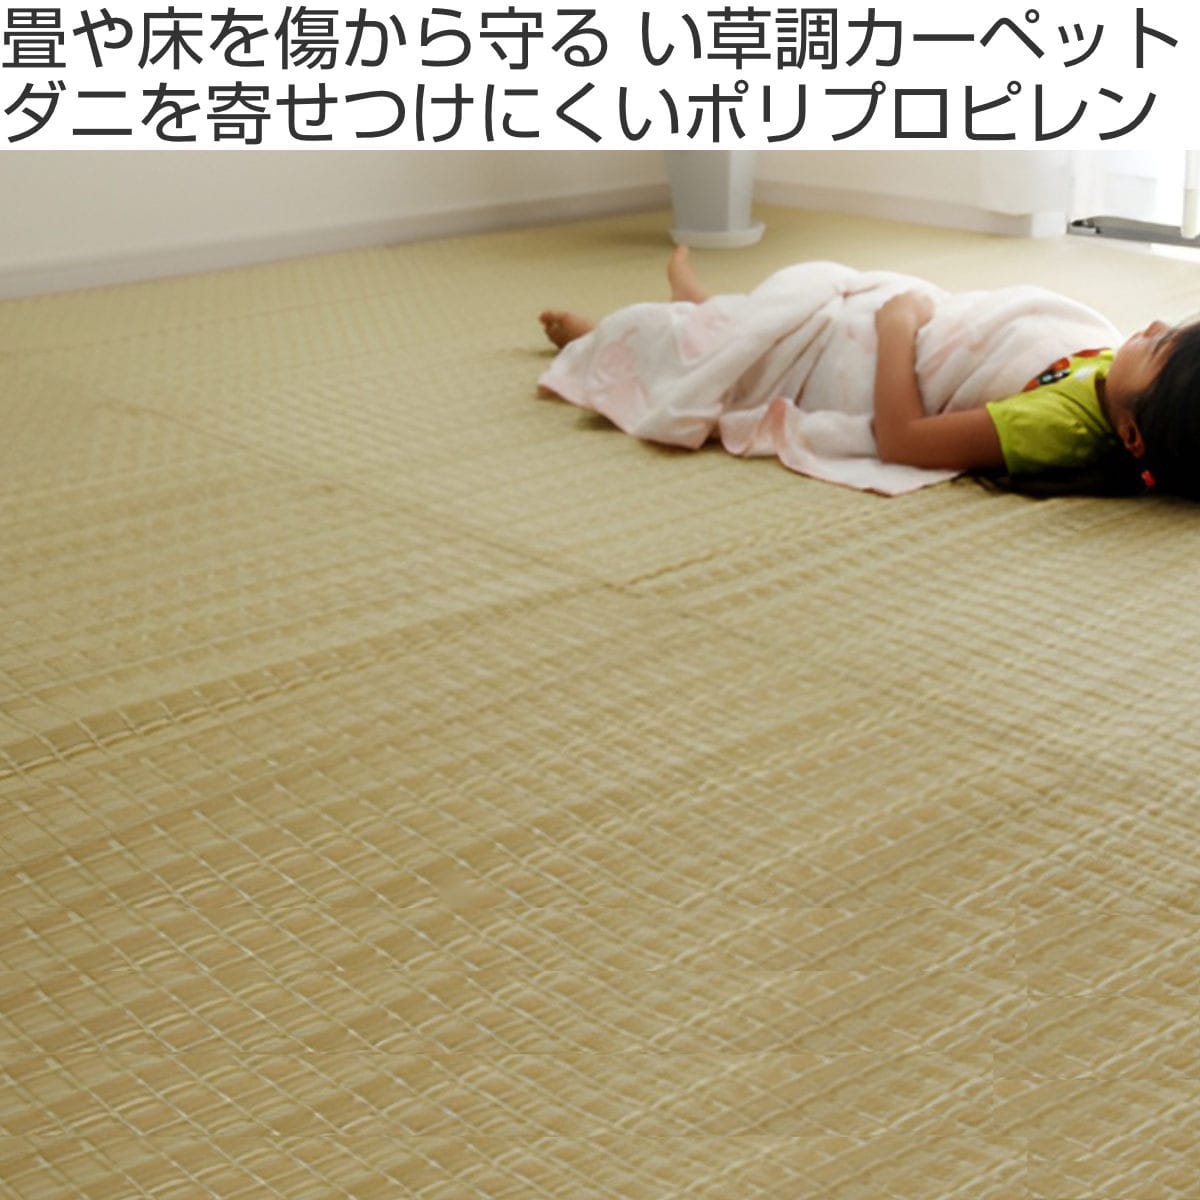 日本製 洗えるPPカーペット グリーン江戸間2畳 約174×174cm　バルカン